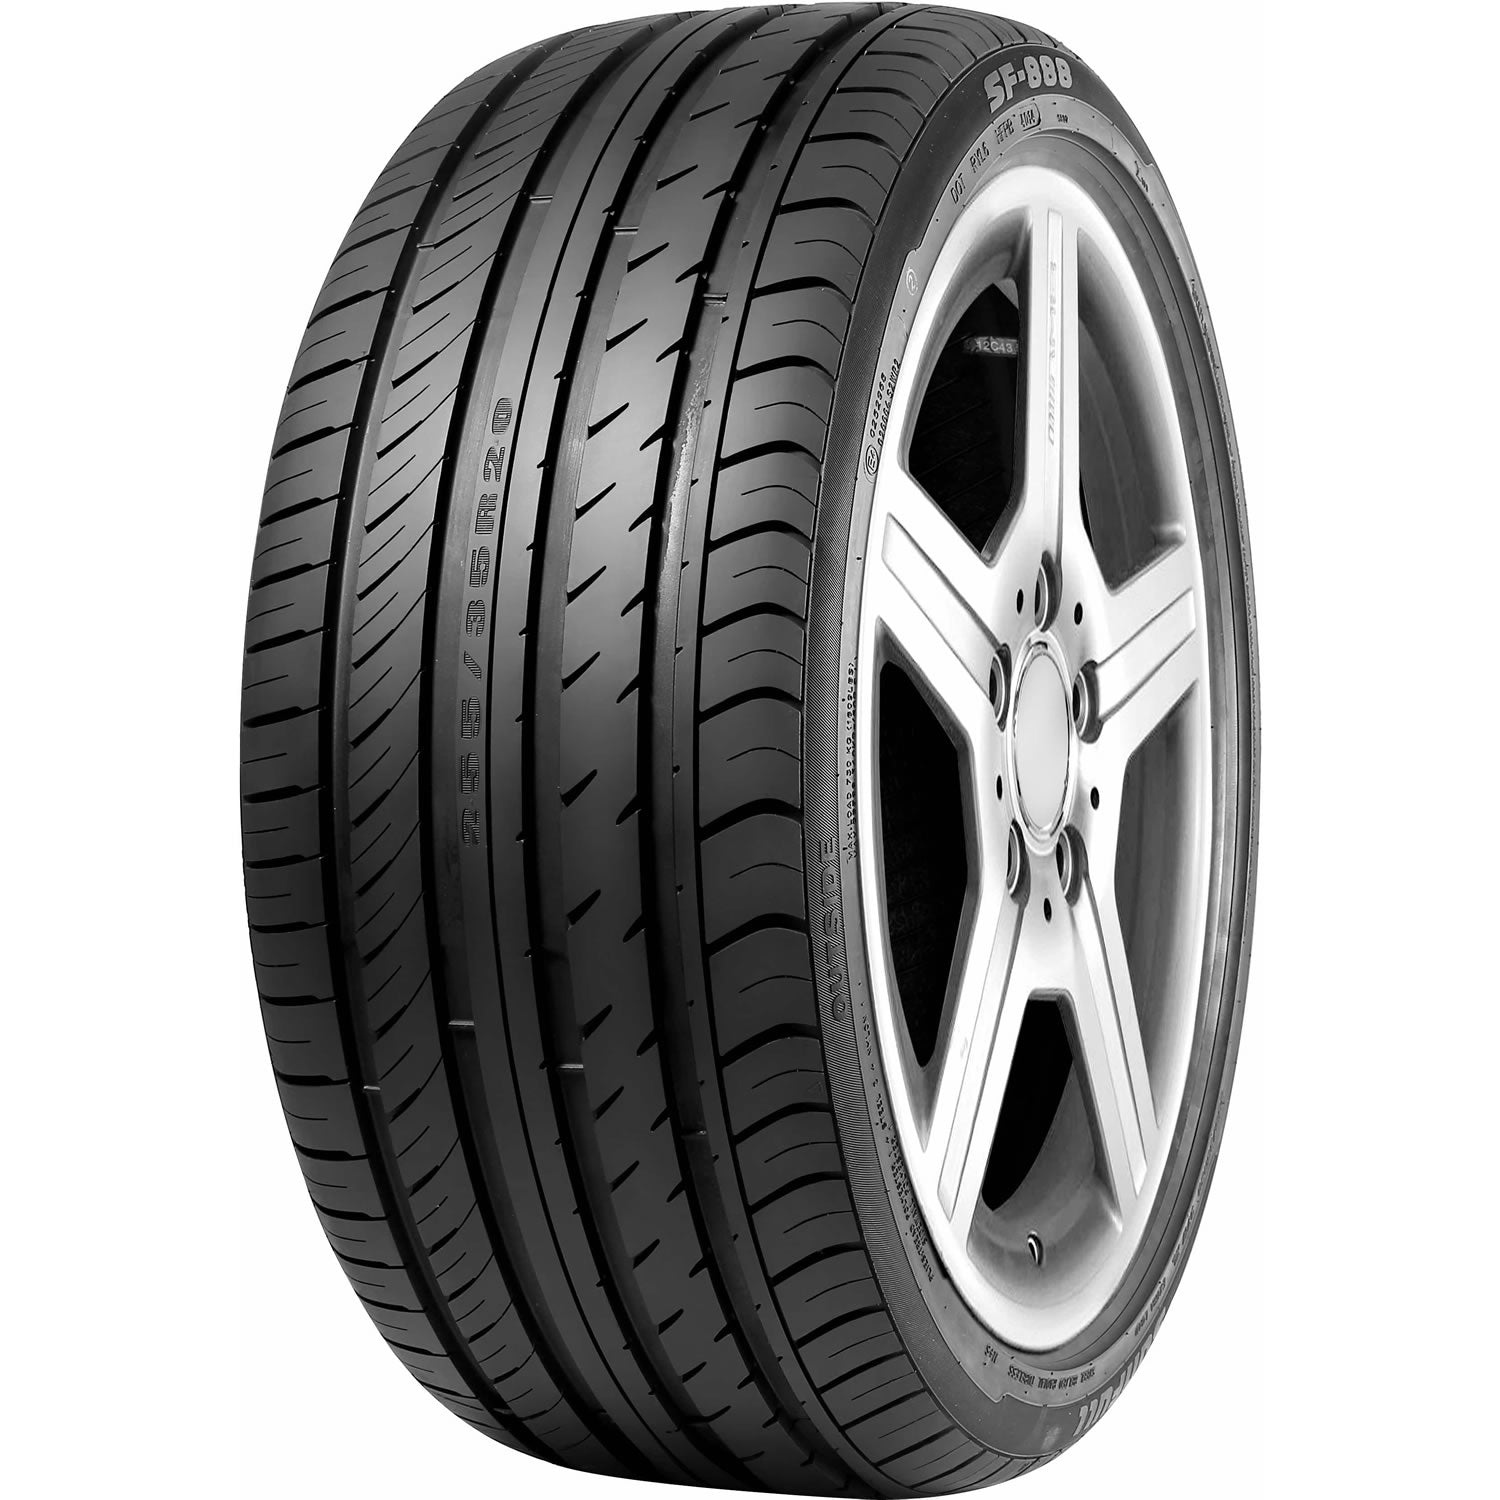 SUNFULL SF-888 225/40R19 XL (26.1X9.1R 19) Tires